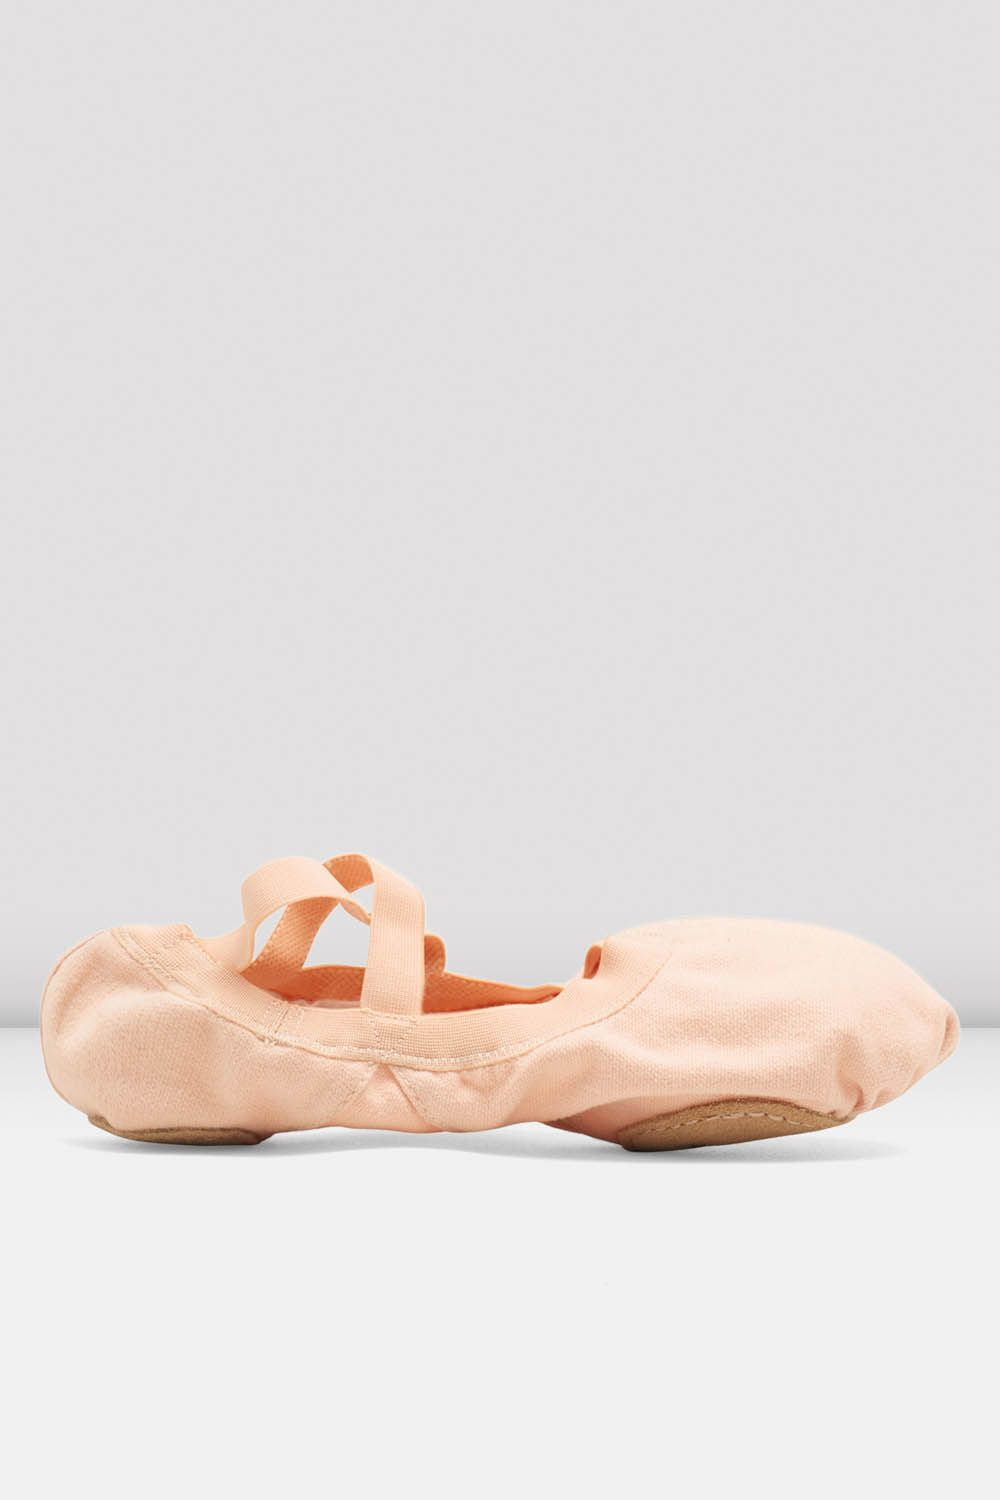 Bloch Pro Elastic Zapatillas Ballet para Comprar Online - Calzado Ballet